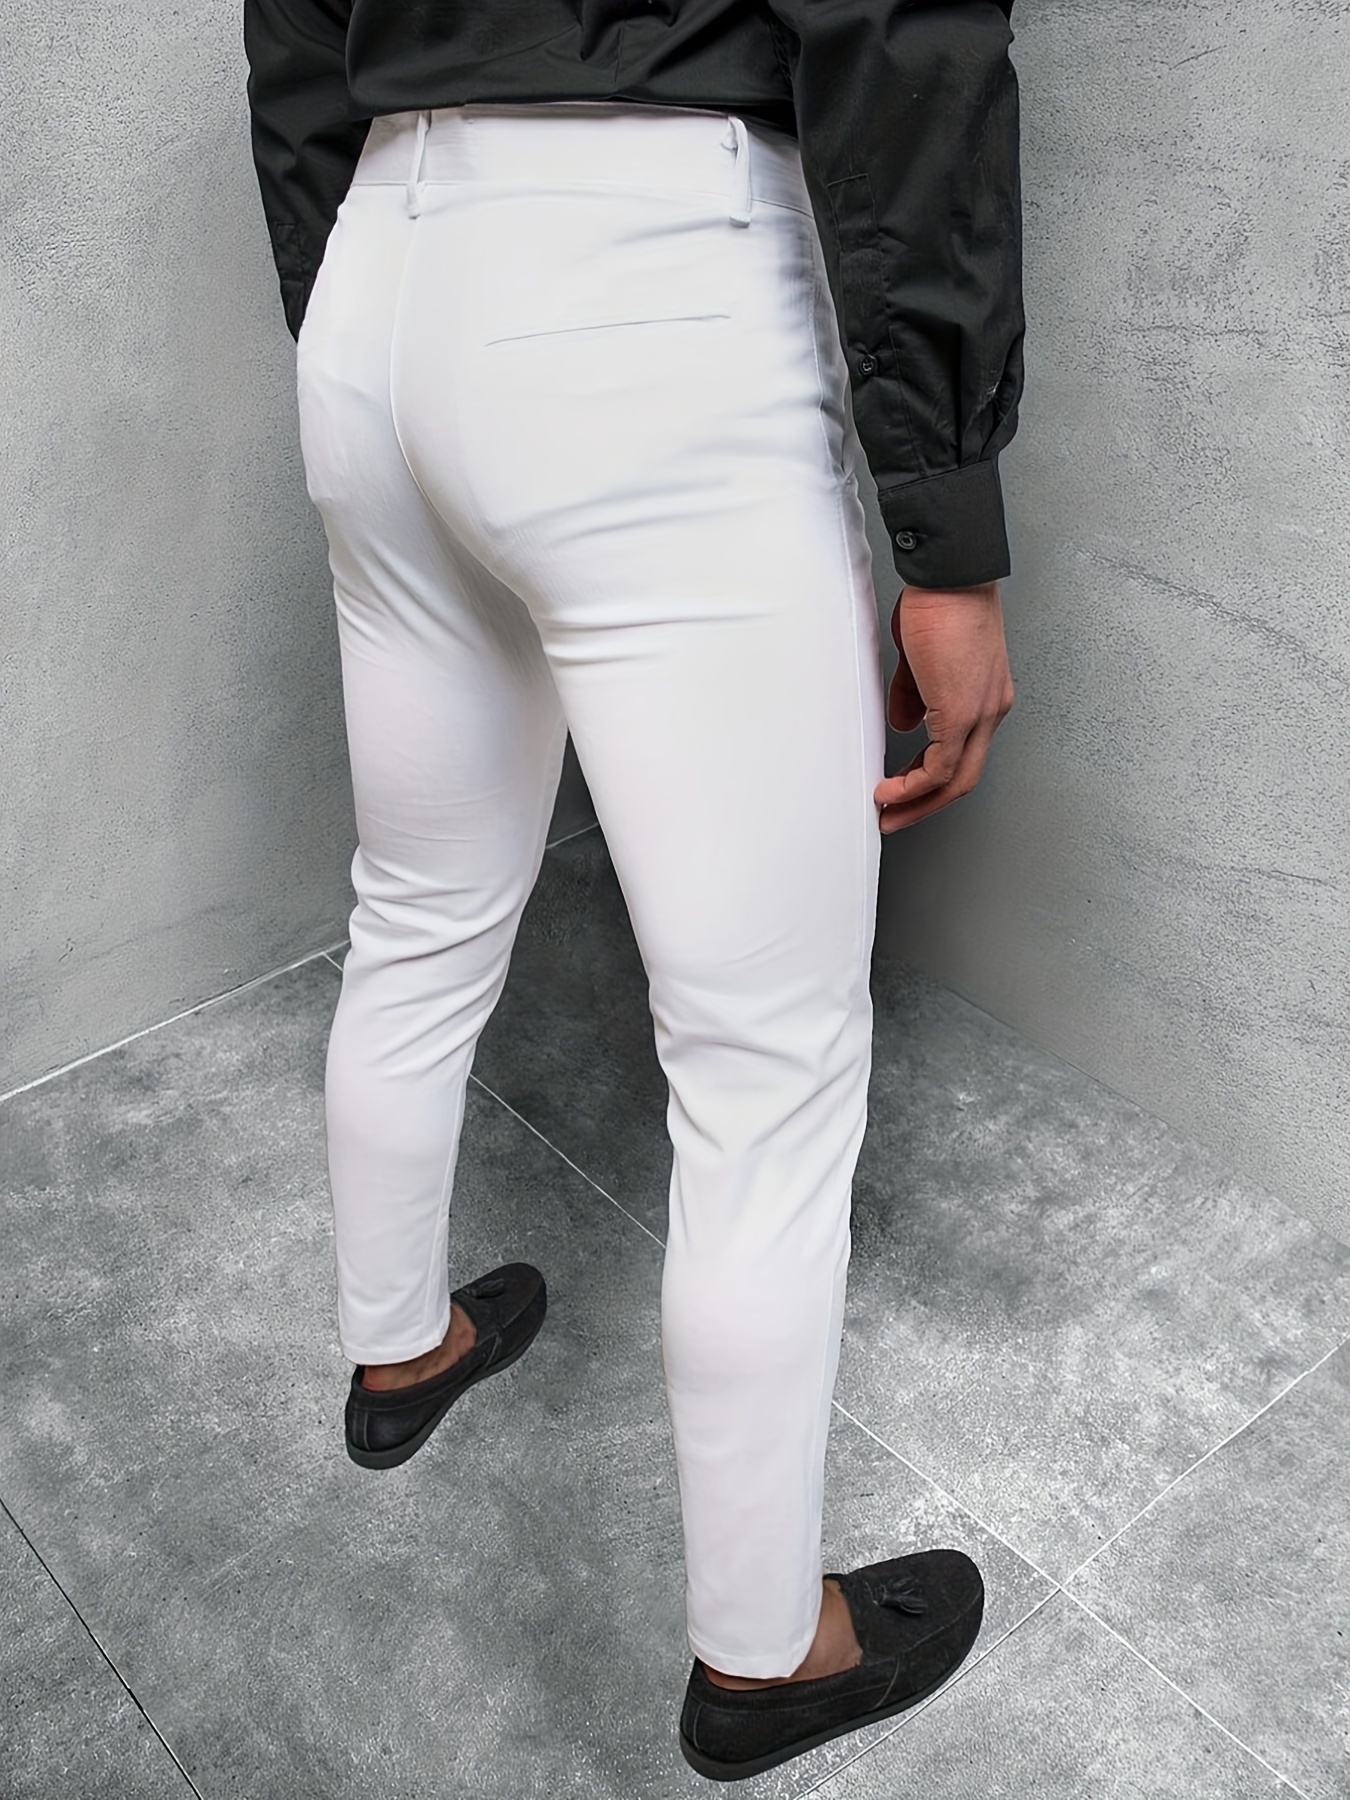 Elegant Slim Fit Slacks Men's Semi formal Vintage Style - Temu Canada